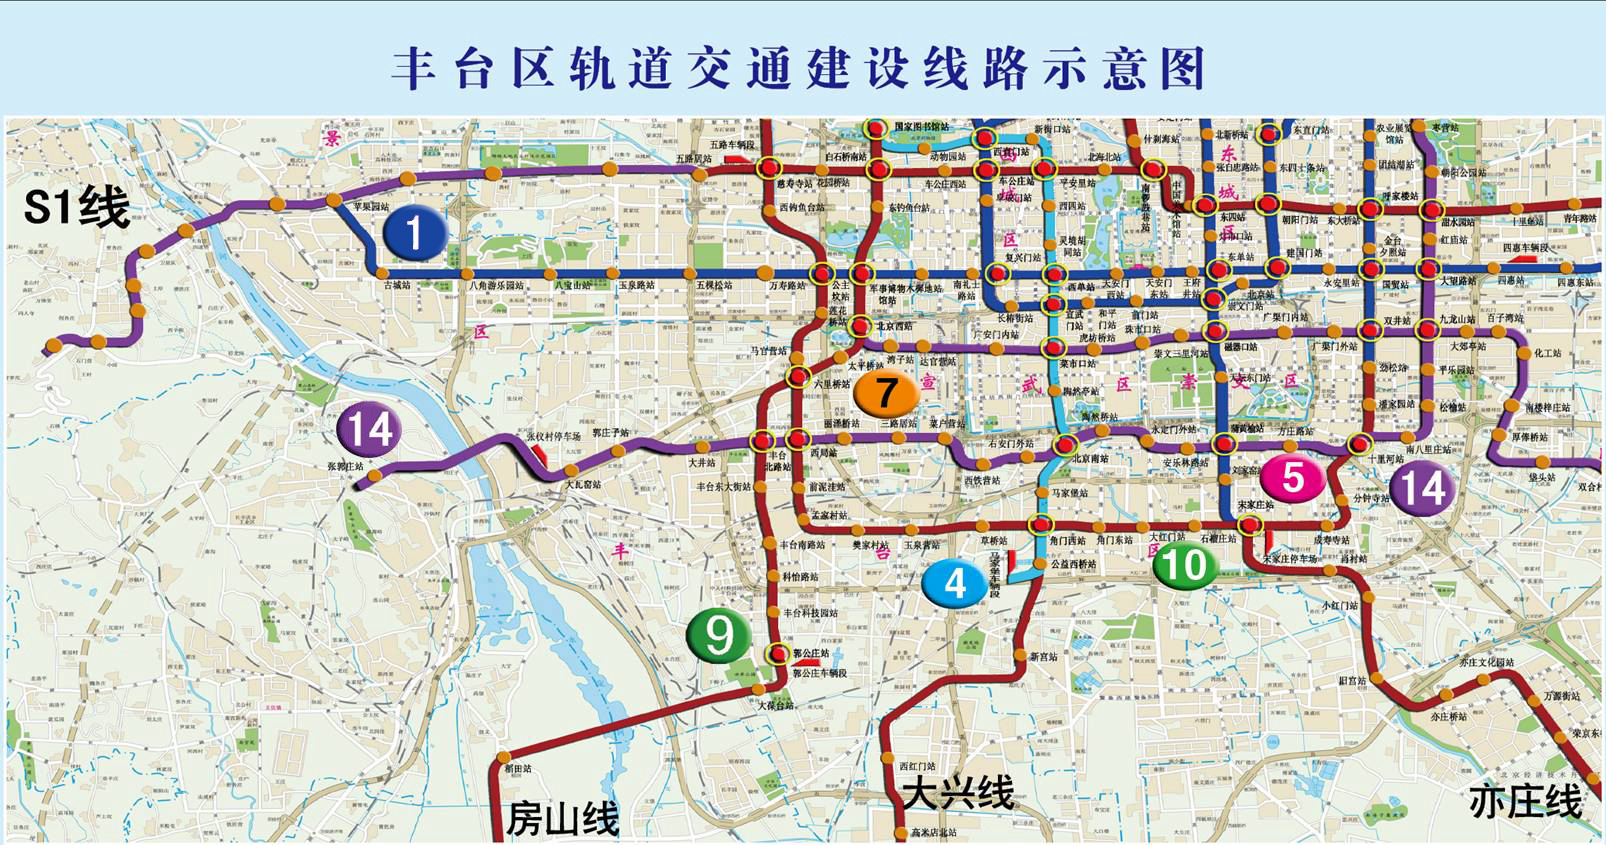 未来五年北京丰台轨道交通增加38.9公里(图)图片